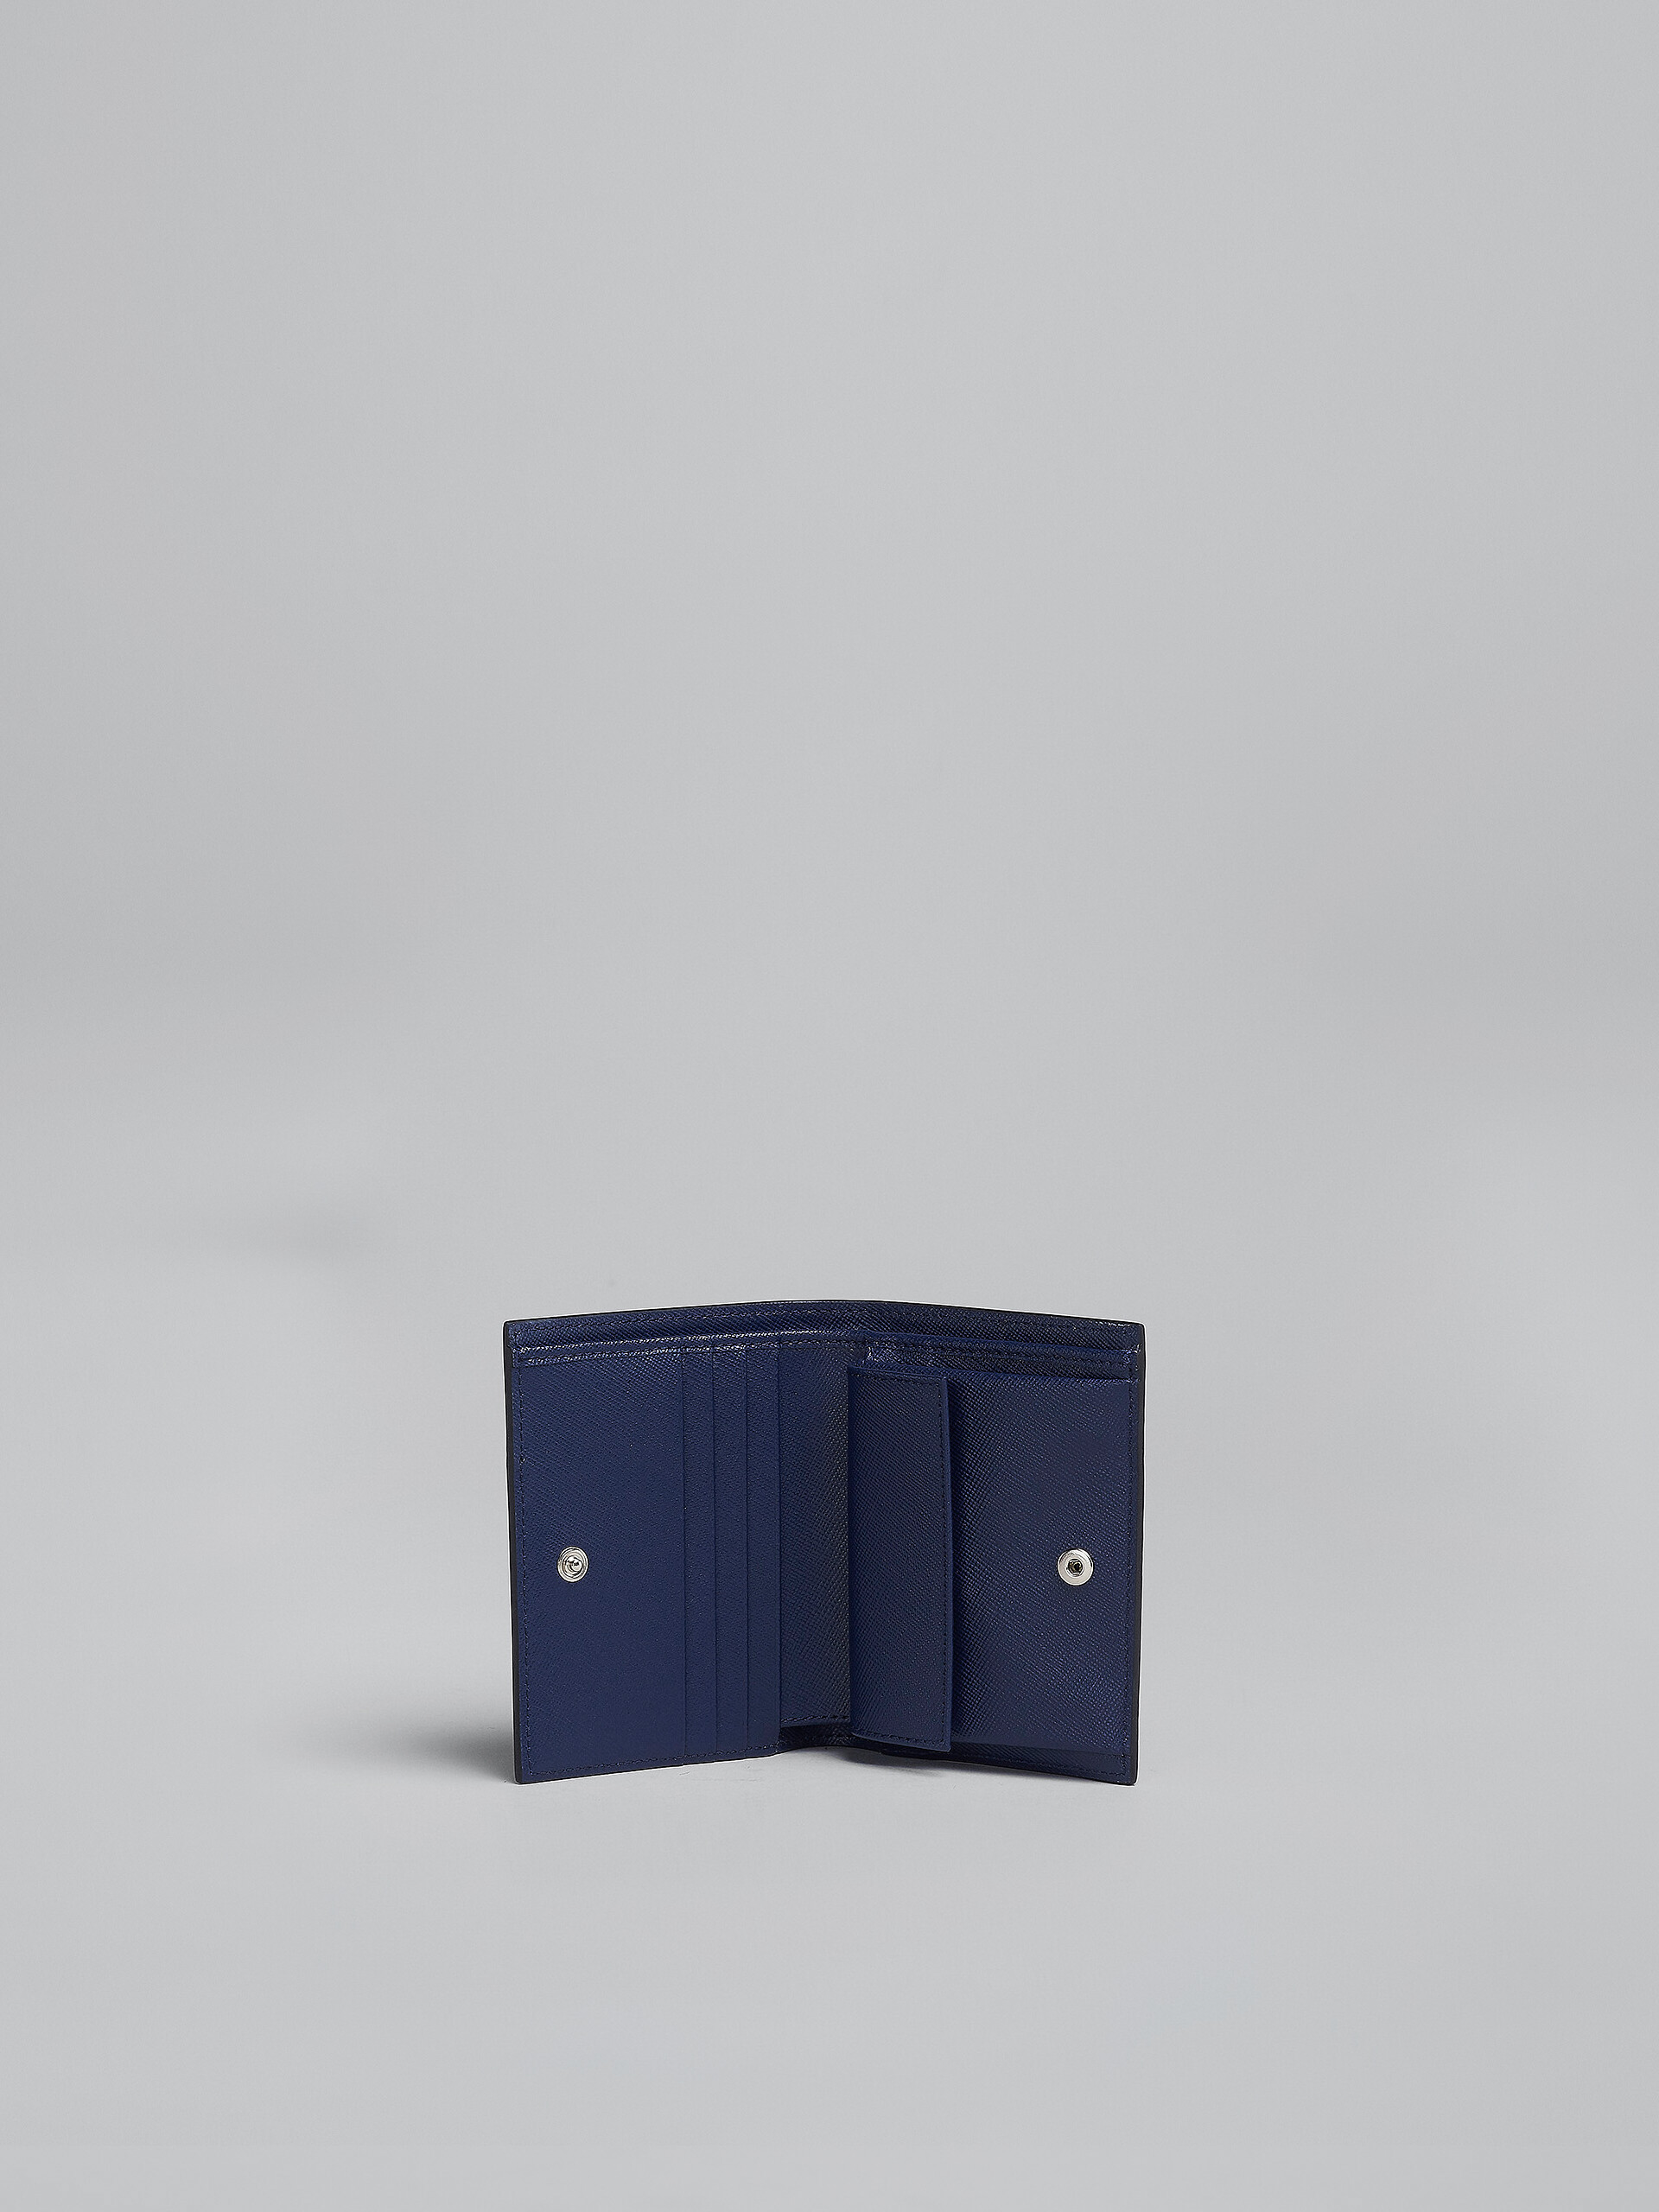 Zweifache Faltbrieftasche aus blauem Saffiano-Leder - Brieftaschen - Image 2